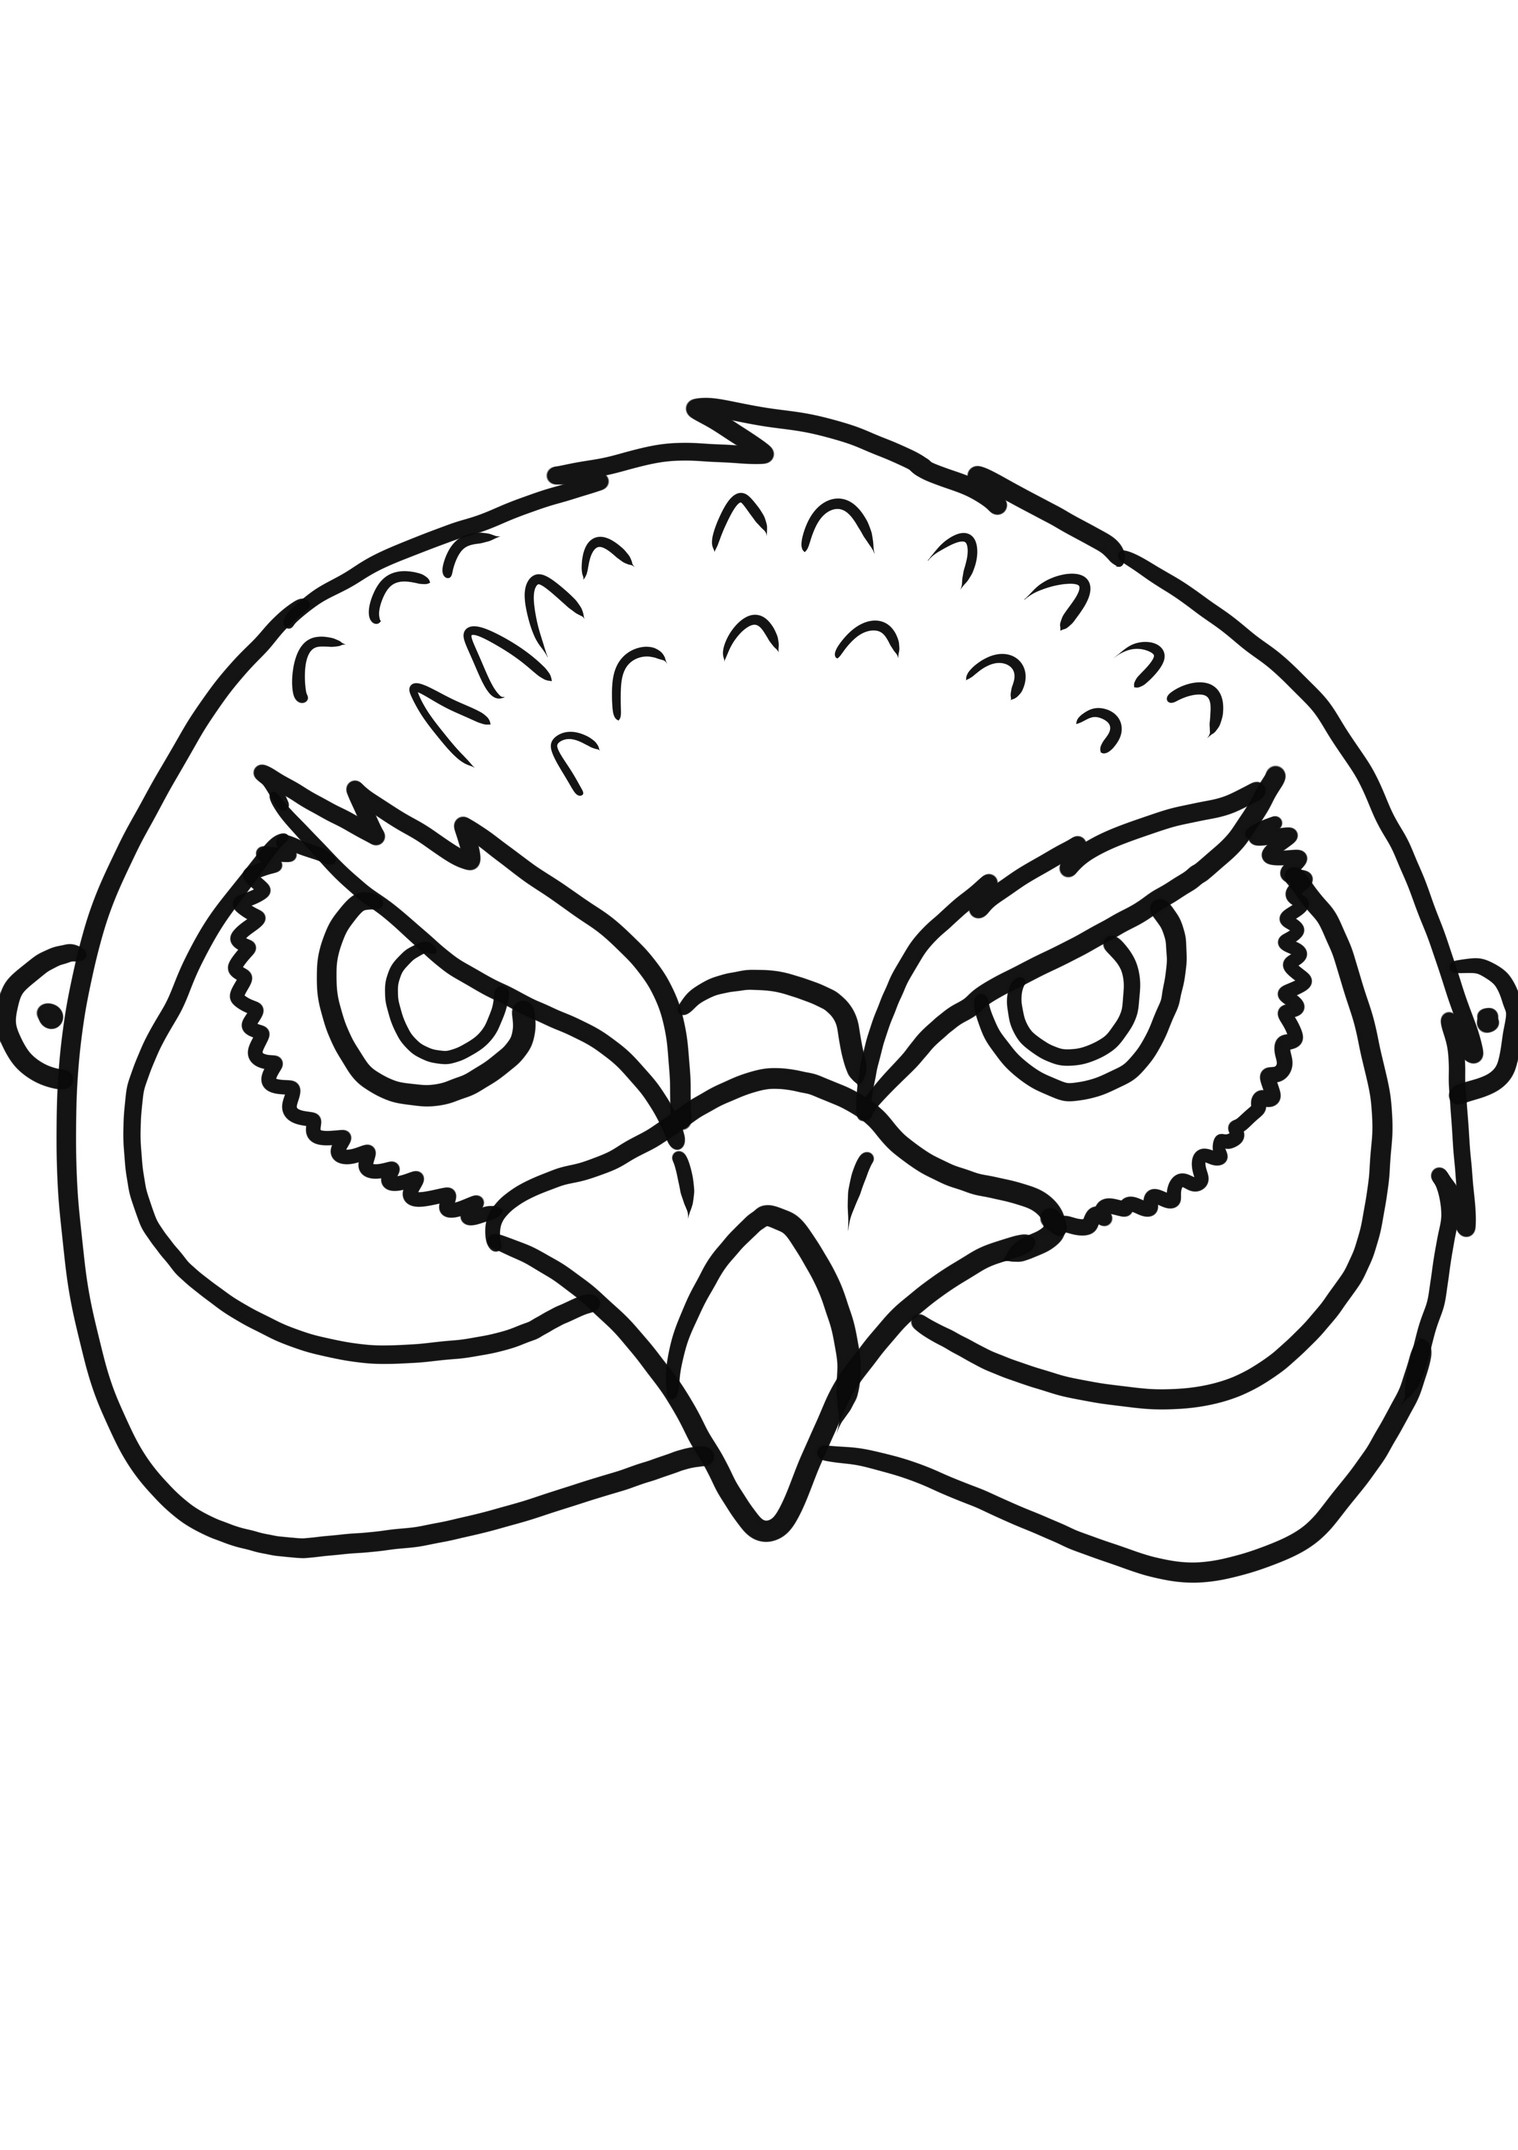 Disegno di falco realistico da colorare